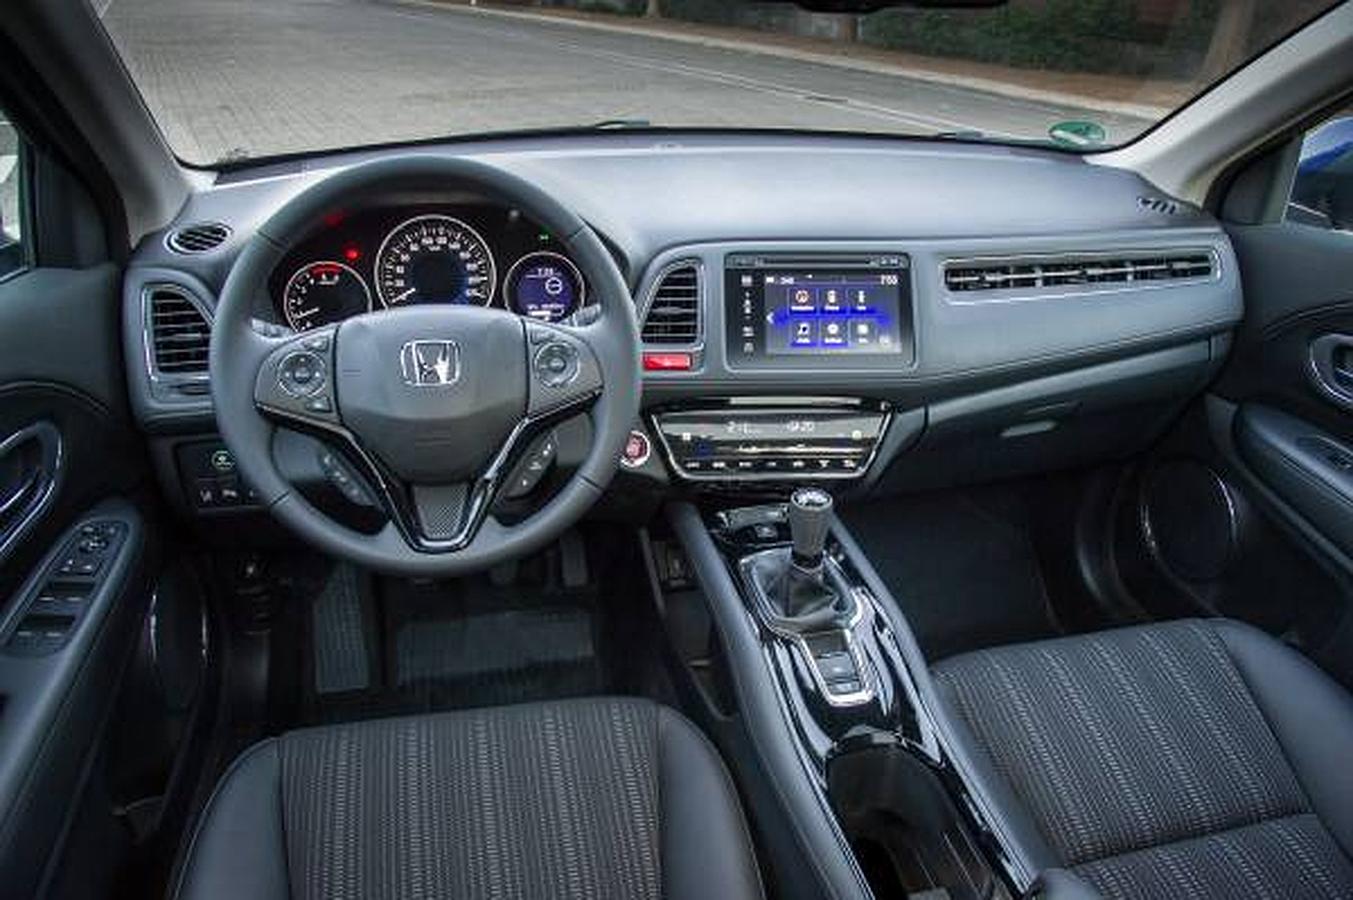 Sistema de infoentretenimiento Honda Connect disponible de serie (según versiones)